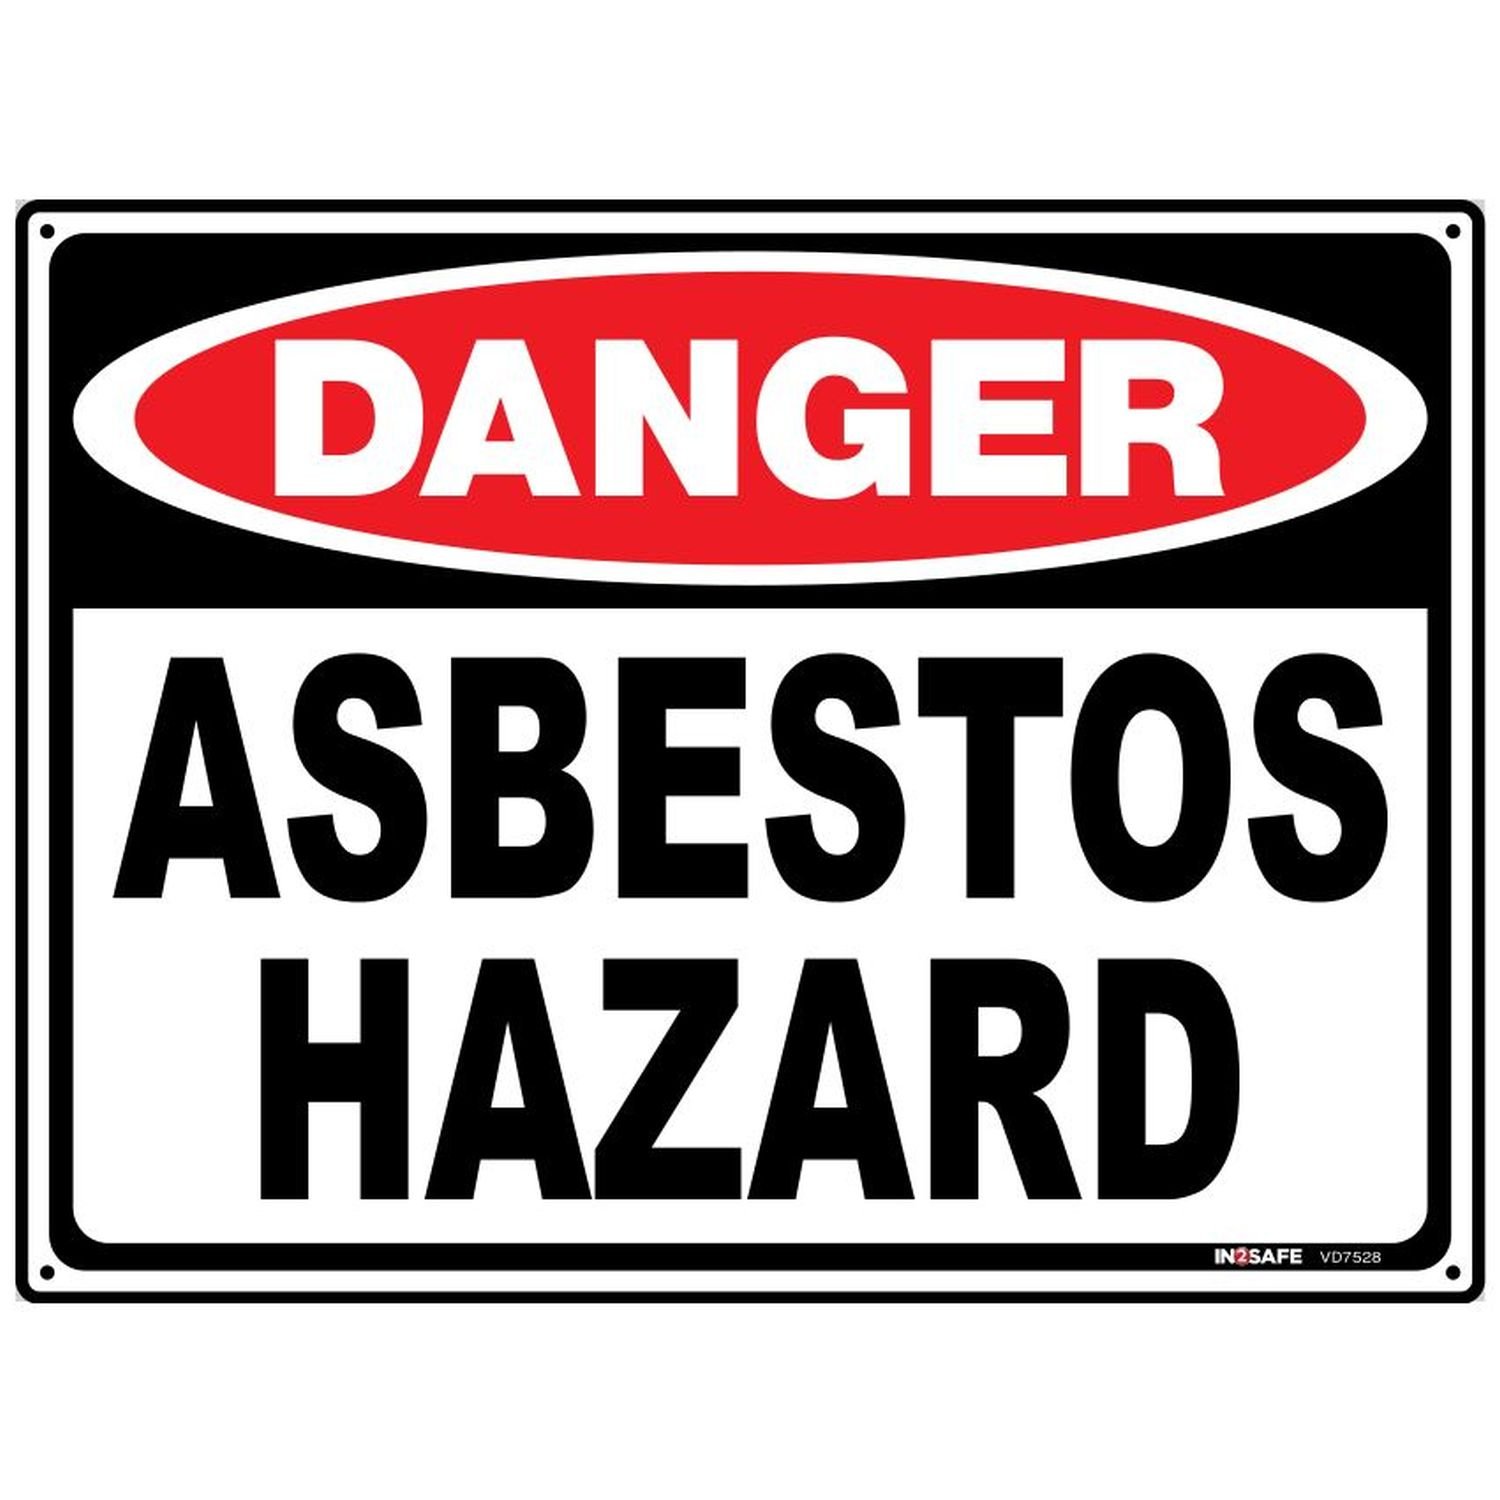 DANGER Asbestos Hazard